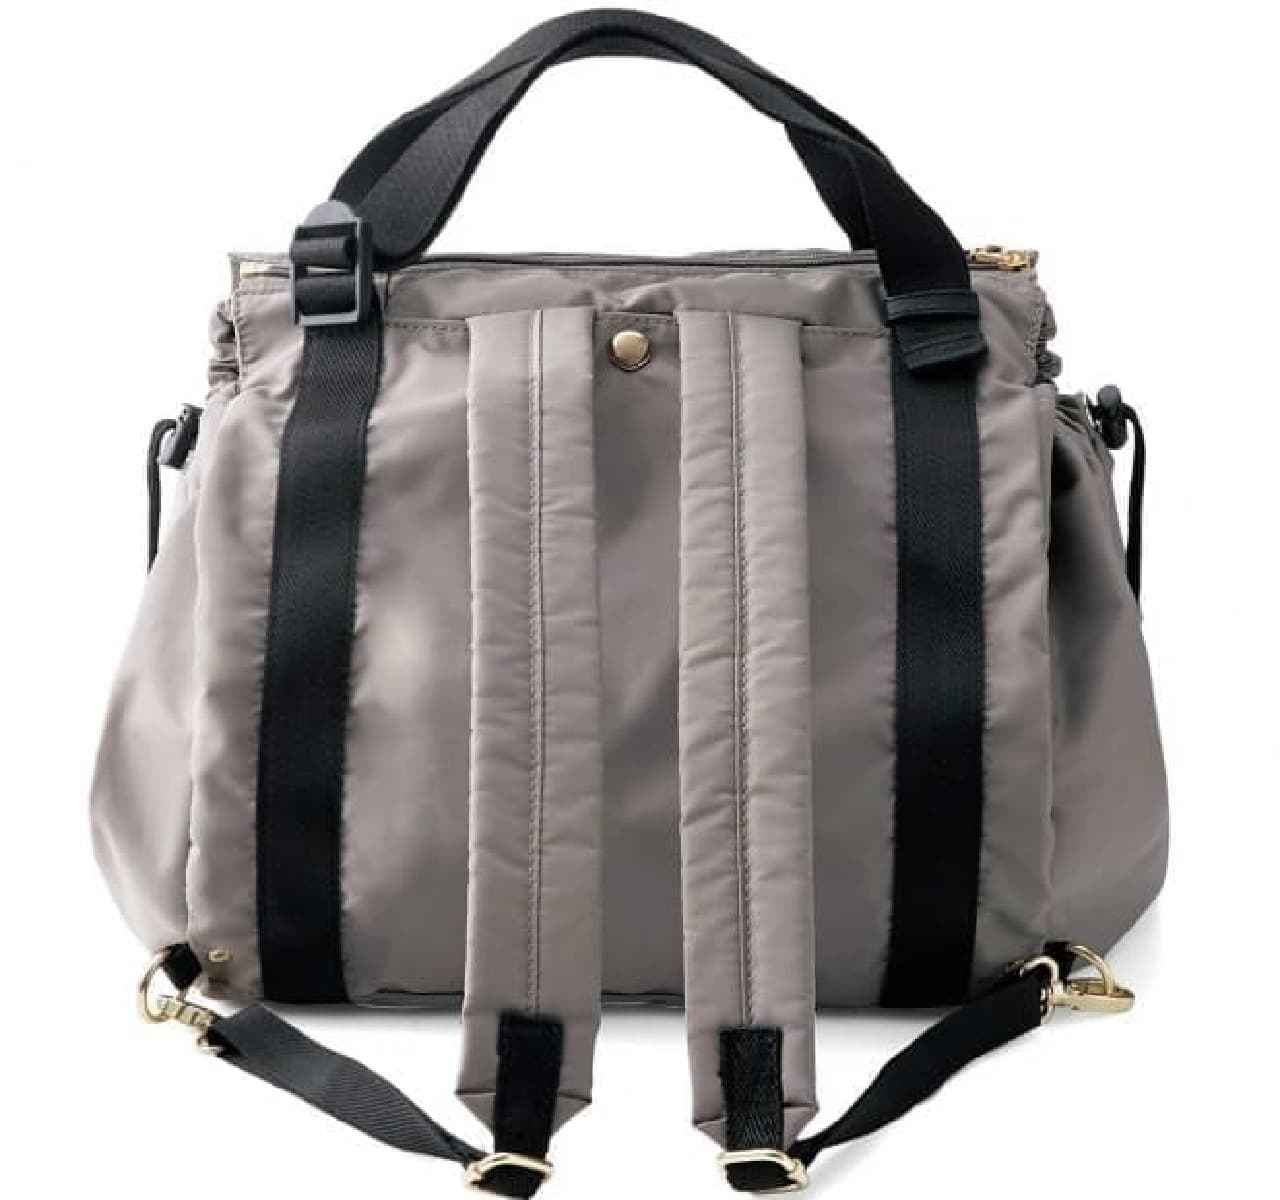 "Transformation basket bag" backpack form